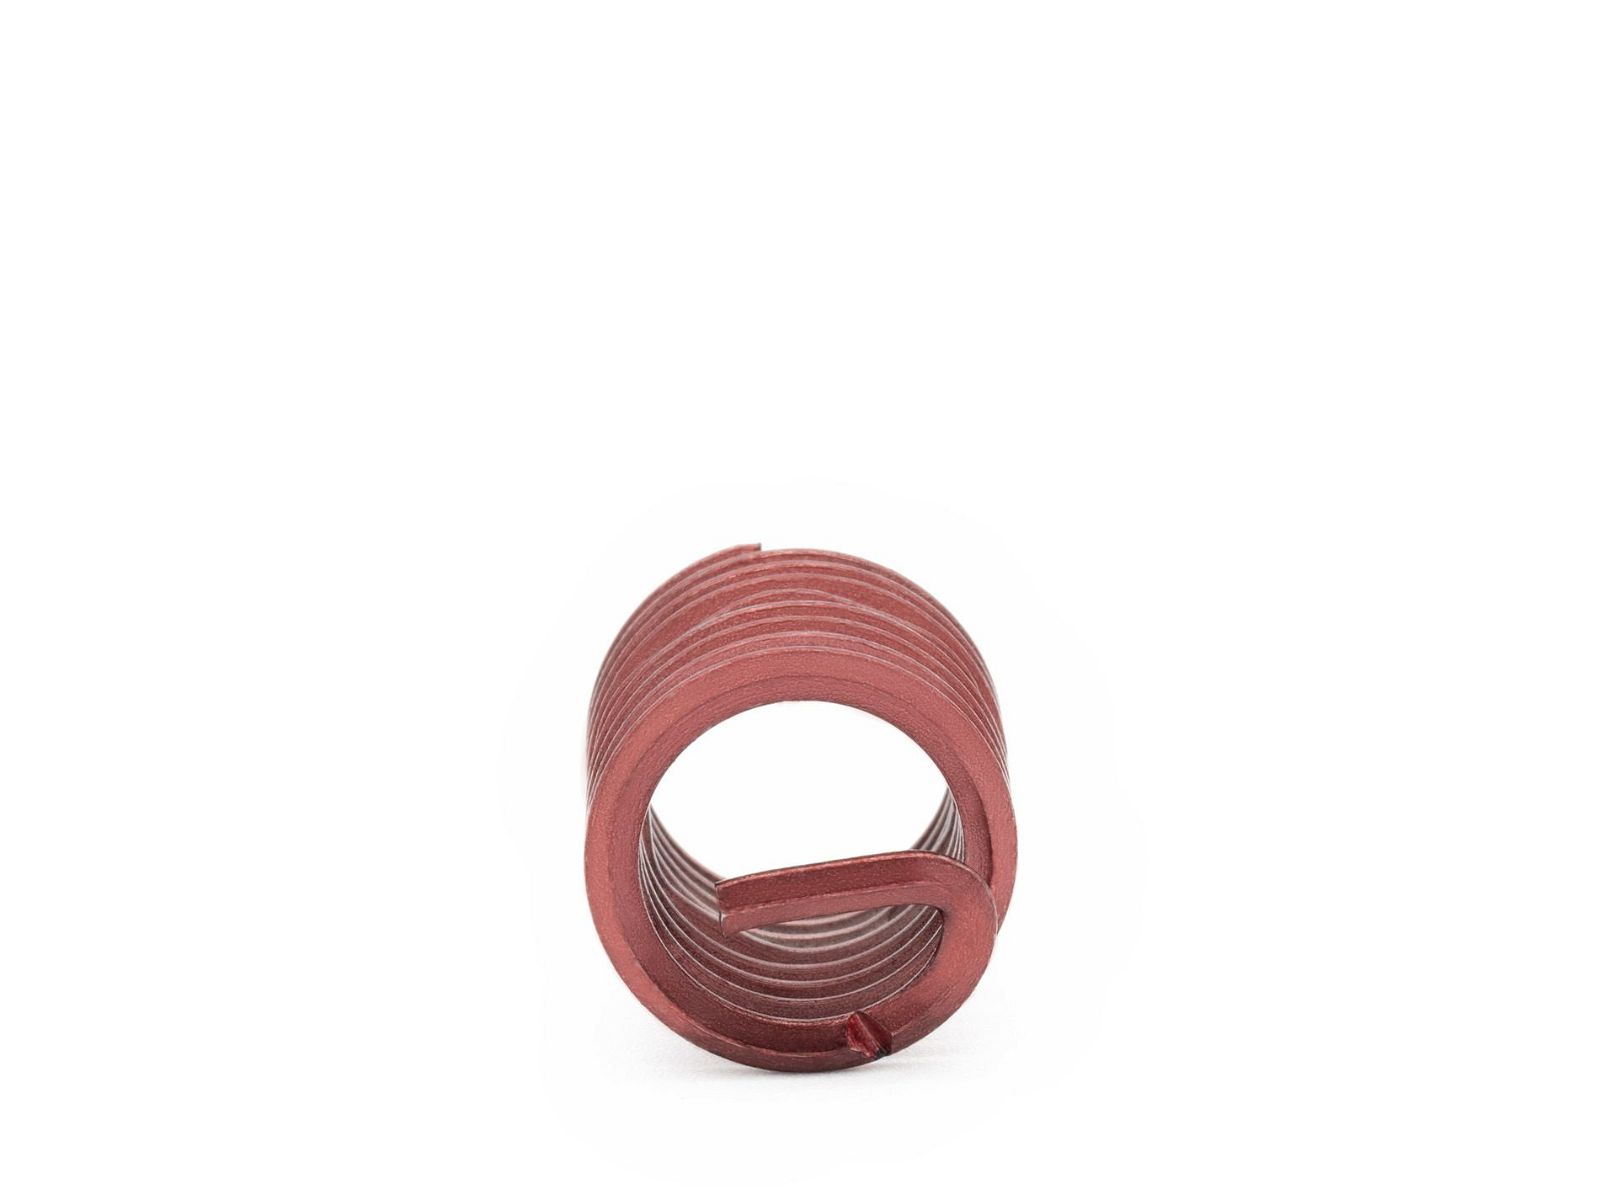 BaerCoil Wire Thread Inserts M 10 x 1.25 - 1.5 D (15 mm) - screw grip (screw locking) - 10 pcs.